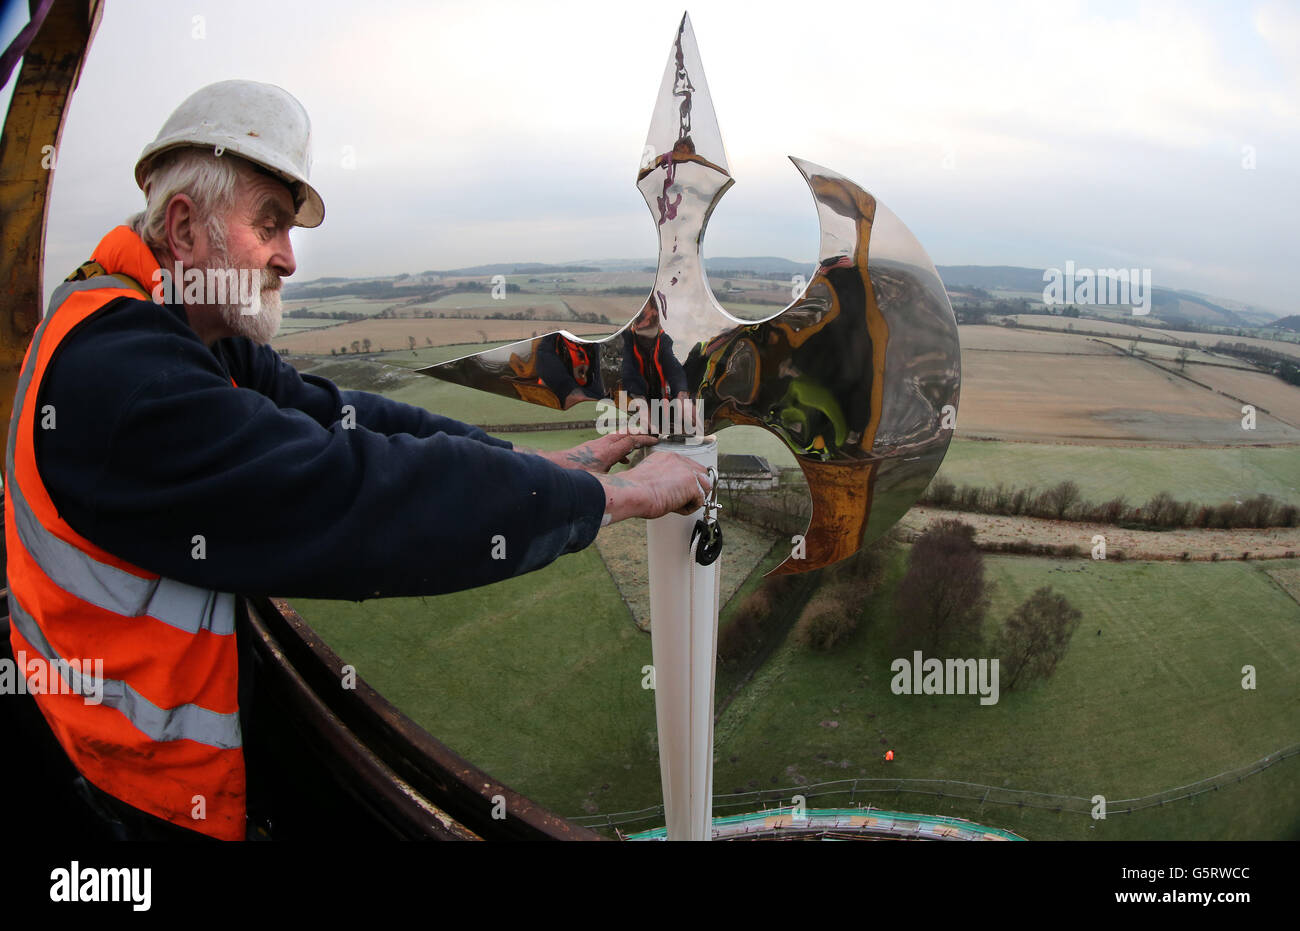 Der Fahnenmast-Ingenieur Brian Whitfield stellt eine neue Windfahne an der Schlachtaxe von Robert the Bruce ein, nachdem er sie nach der Reparatur des Fahnenmastes rechtzeitig zum 700. Jahrestag der Schlacht von Bannockburn im nächsten Jahr am Bannockburn-Fahnenmast in Stirlingshire installiert hatte. Stockfoto